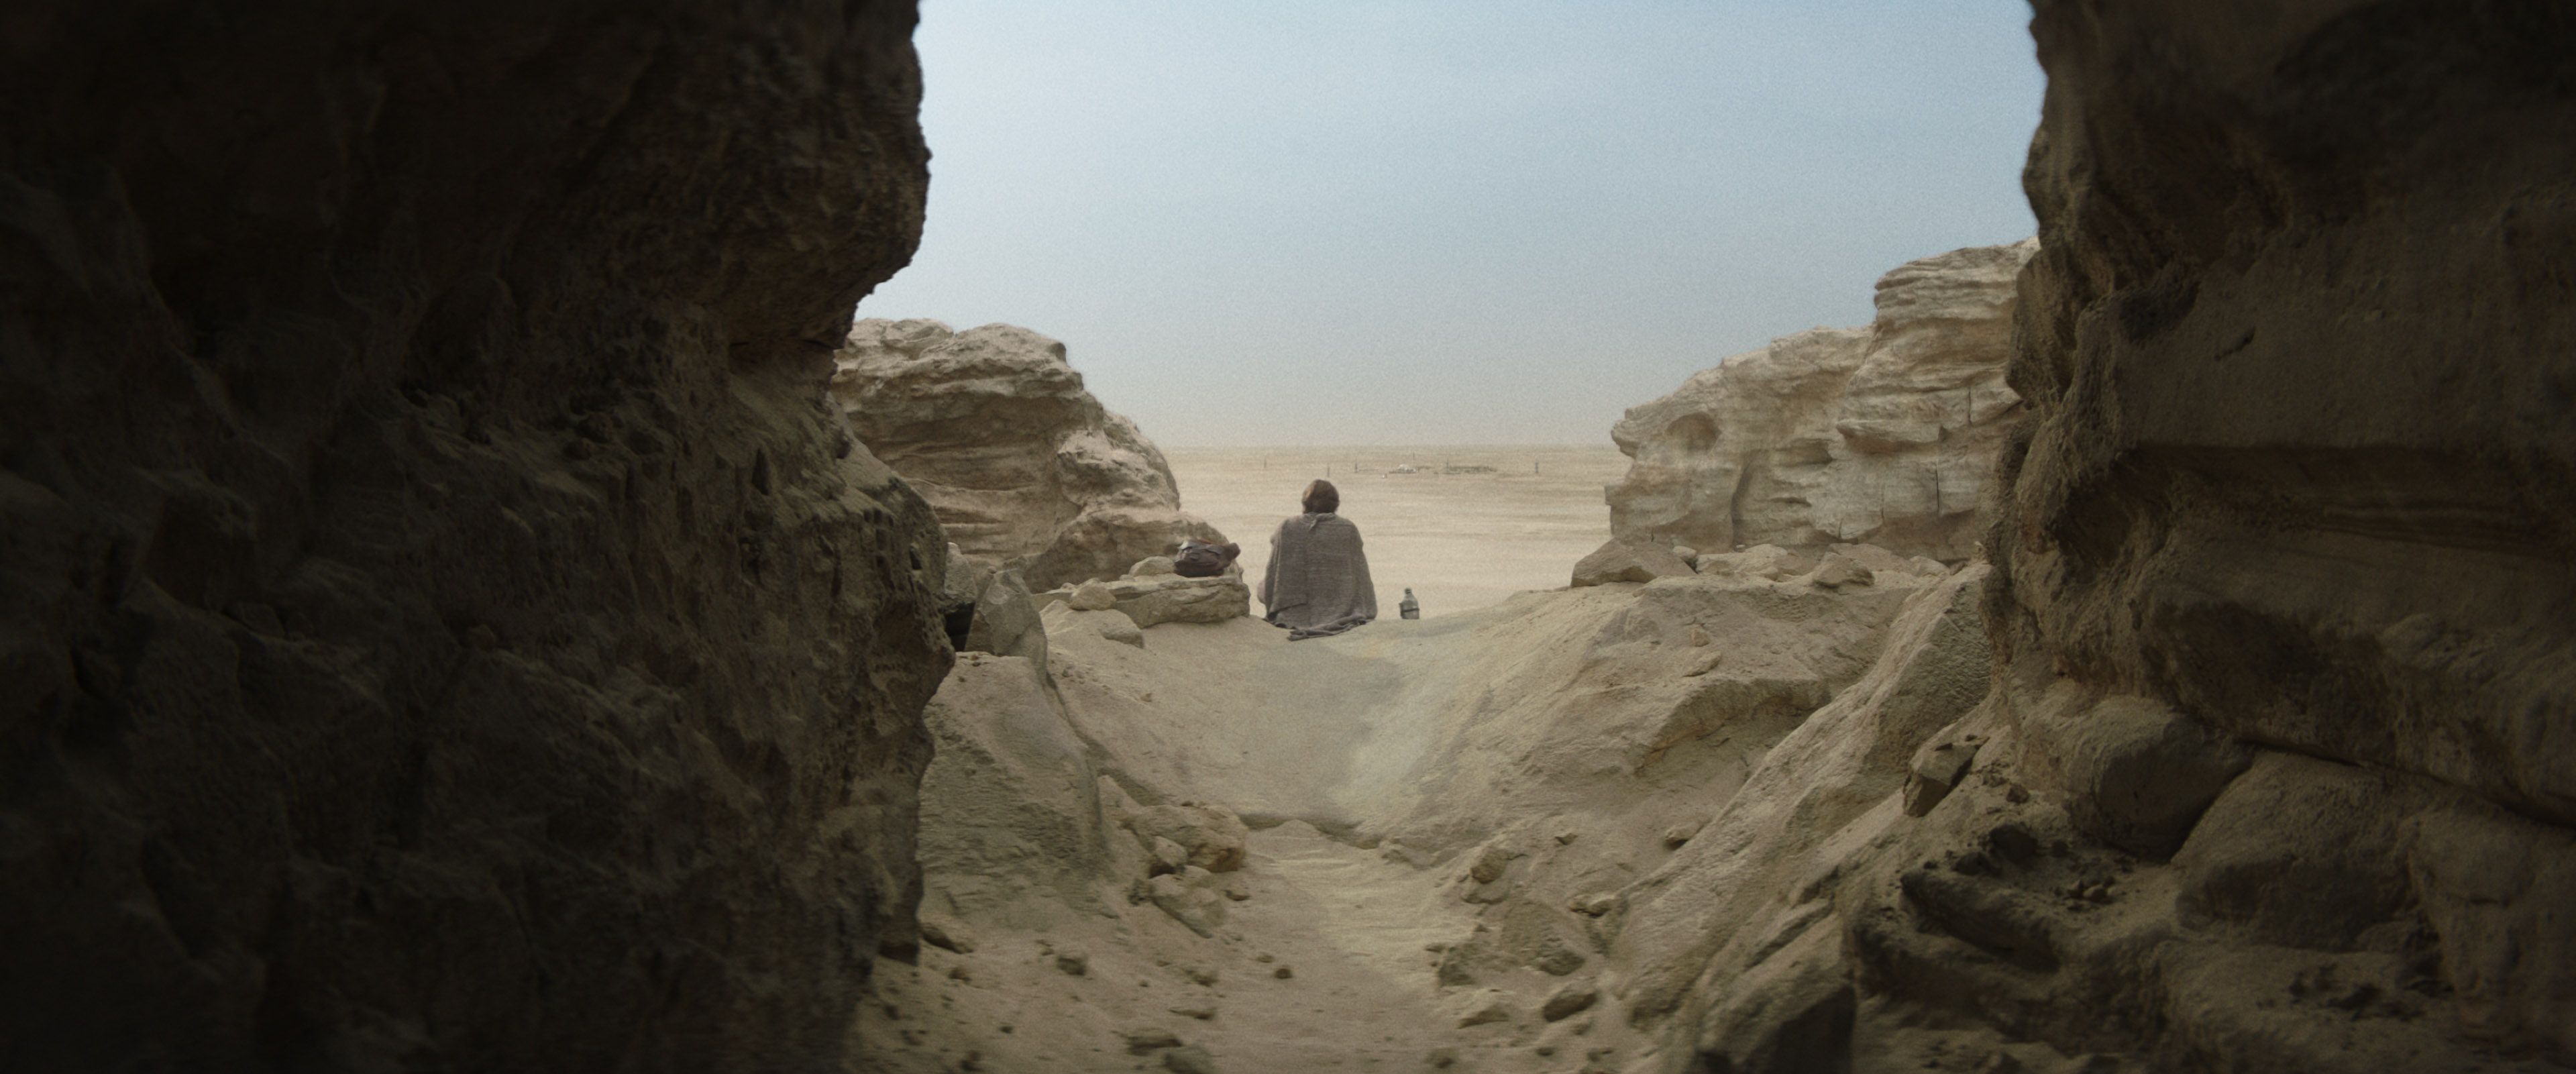 Obi-Wan-Kenobi-desert